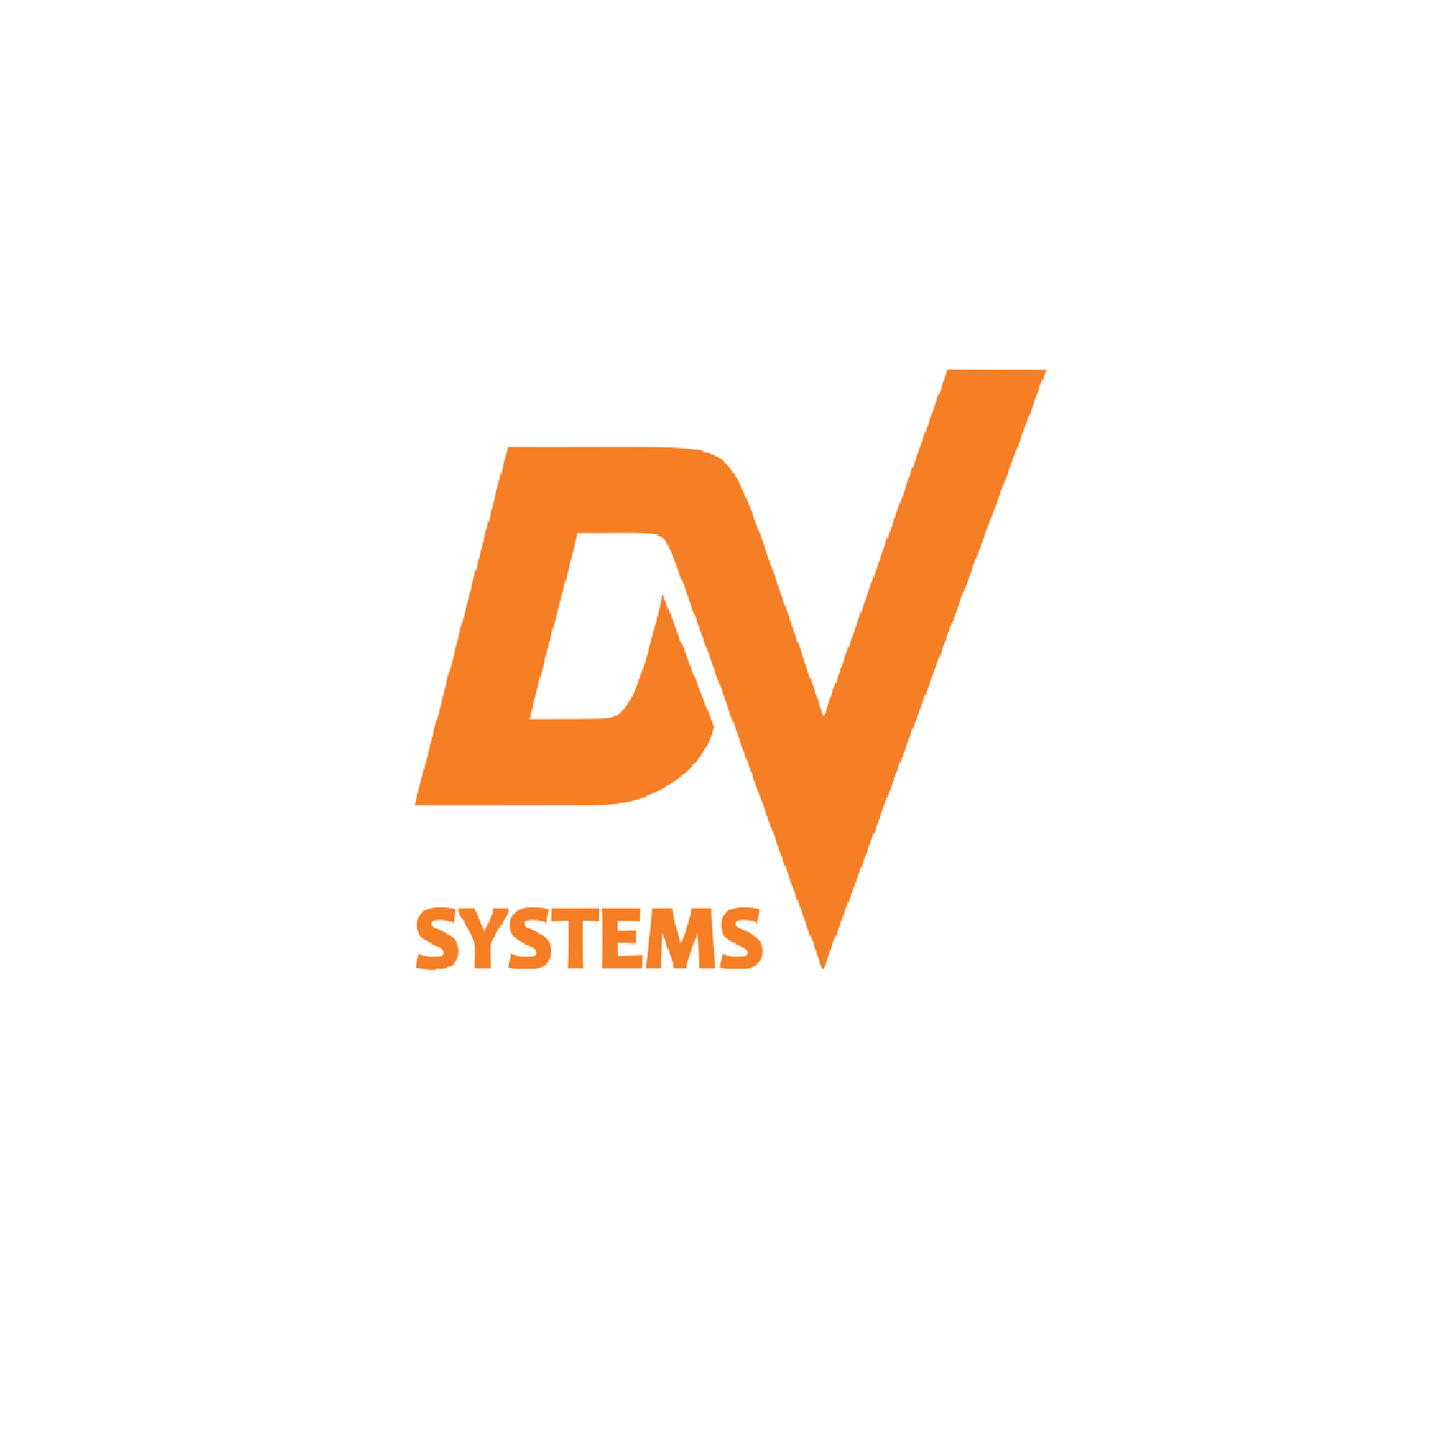 Dsc-001915 inverter 460v 100hp dv systems